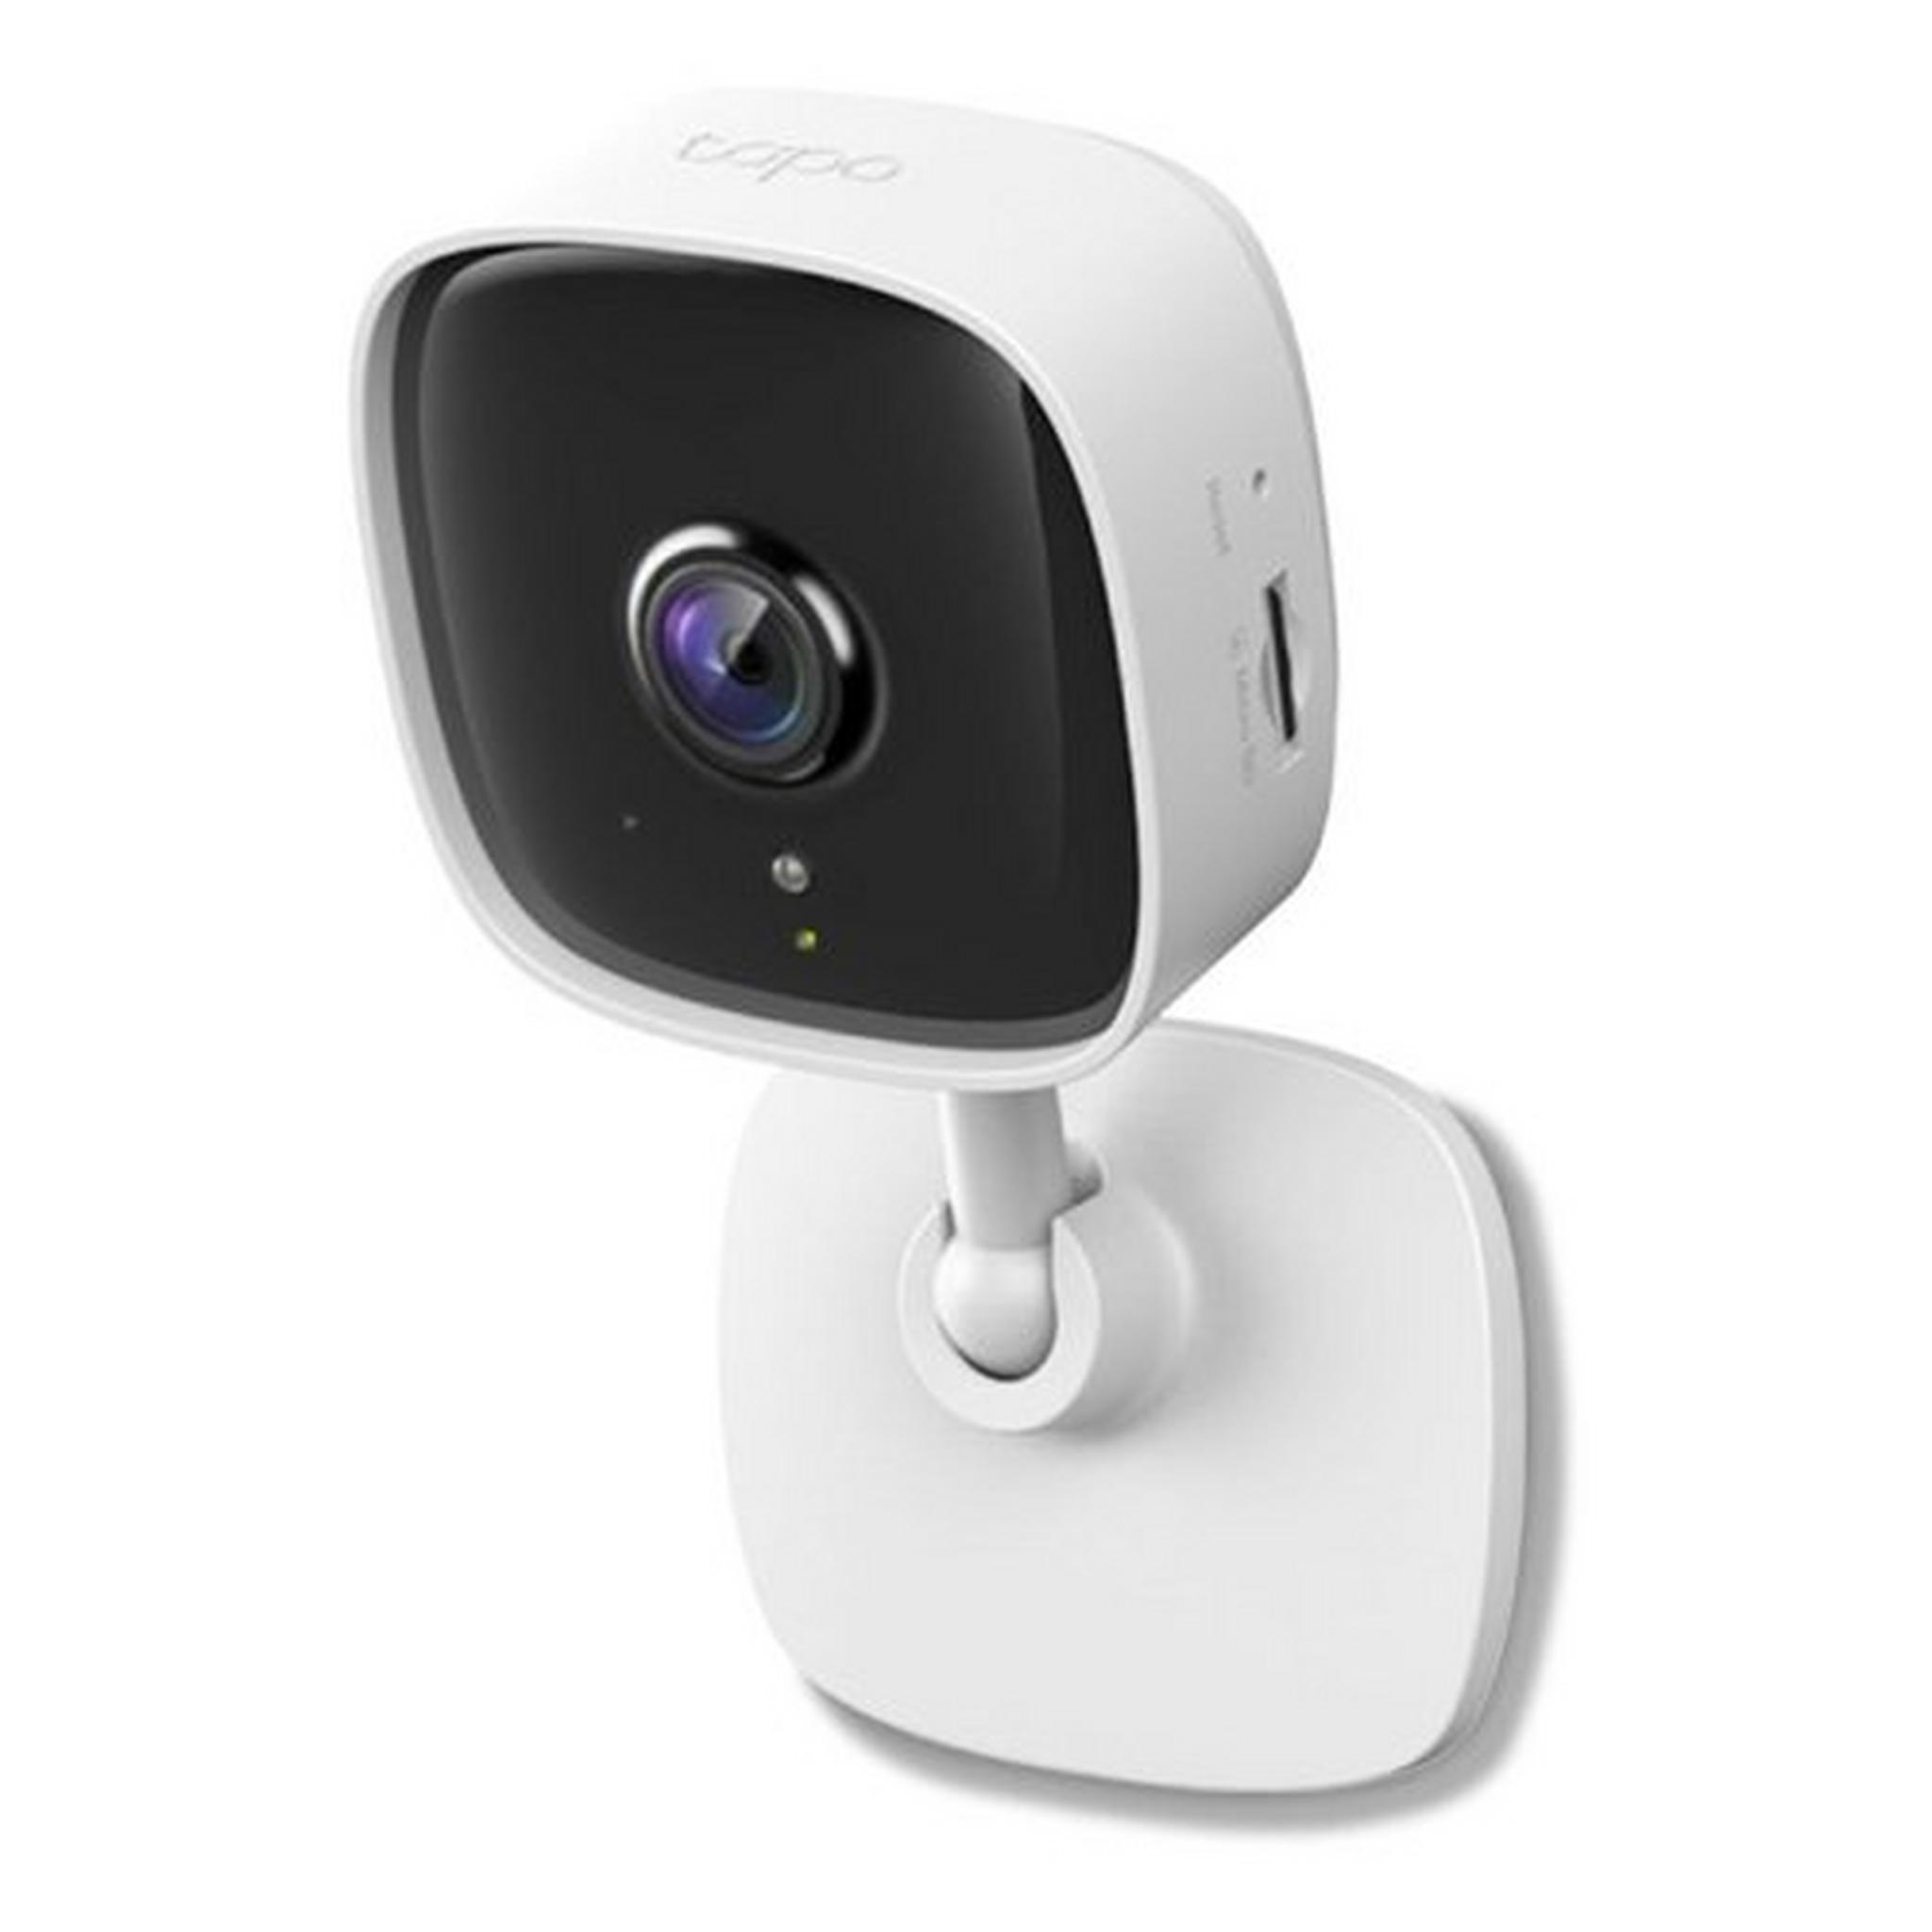 كاميرا للأمن المنزلي تي بي لينك تابو سي500 واي فاي 1080 بيكسل - أبيض